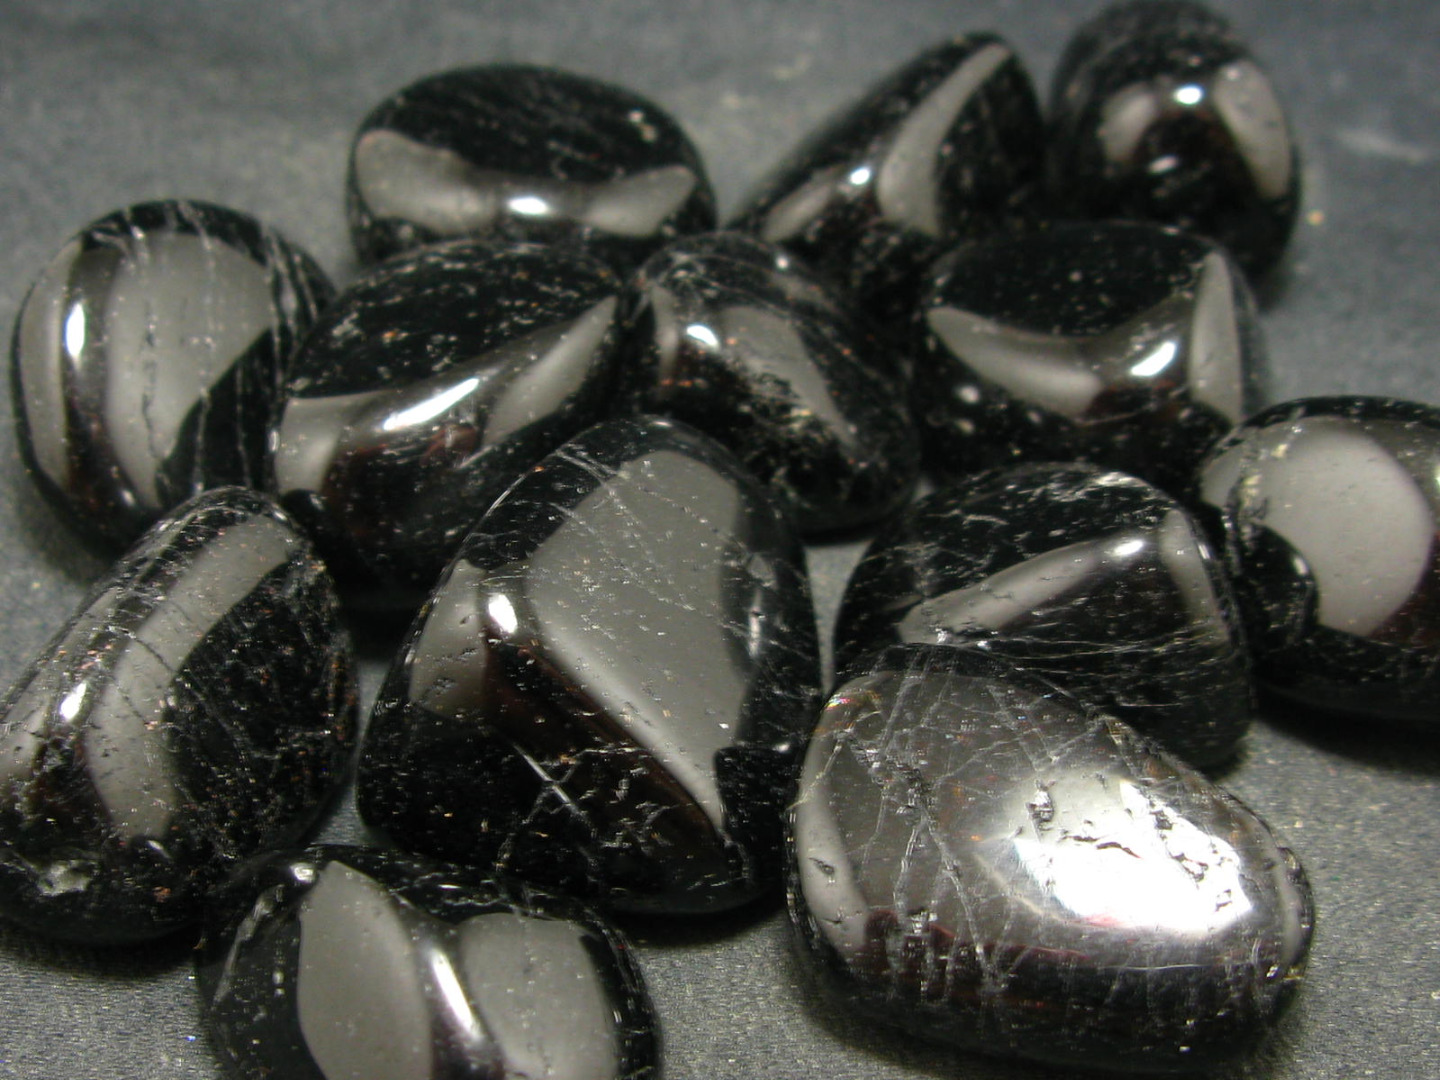 đá sapphire đen cho người sinh năm 1989